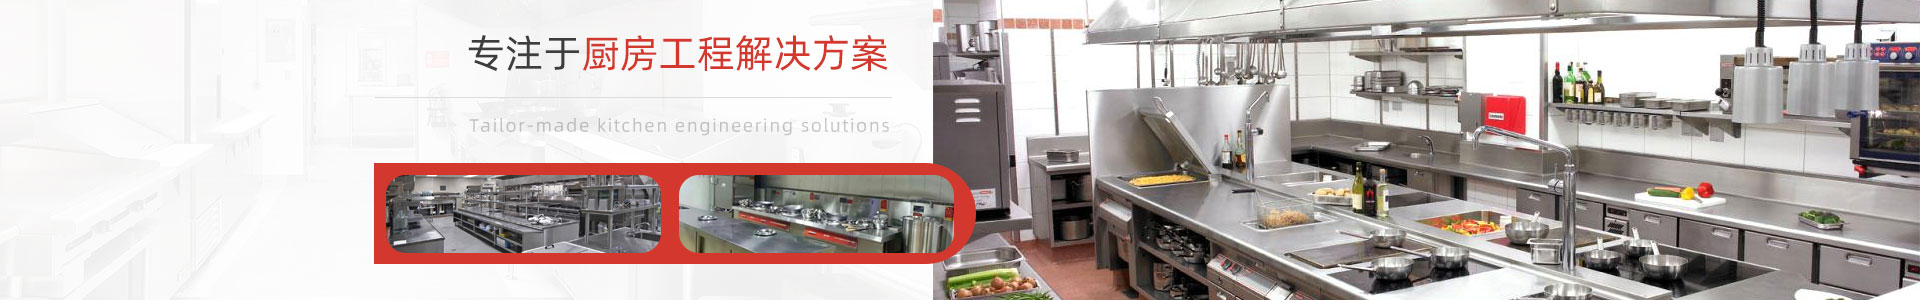 深圳市宏润厨房设备有(yǒu)限公司-西餐设备